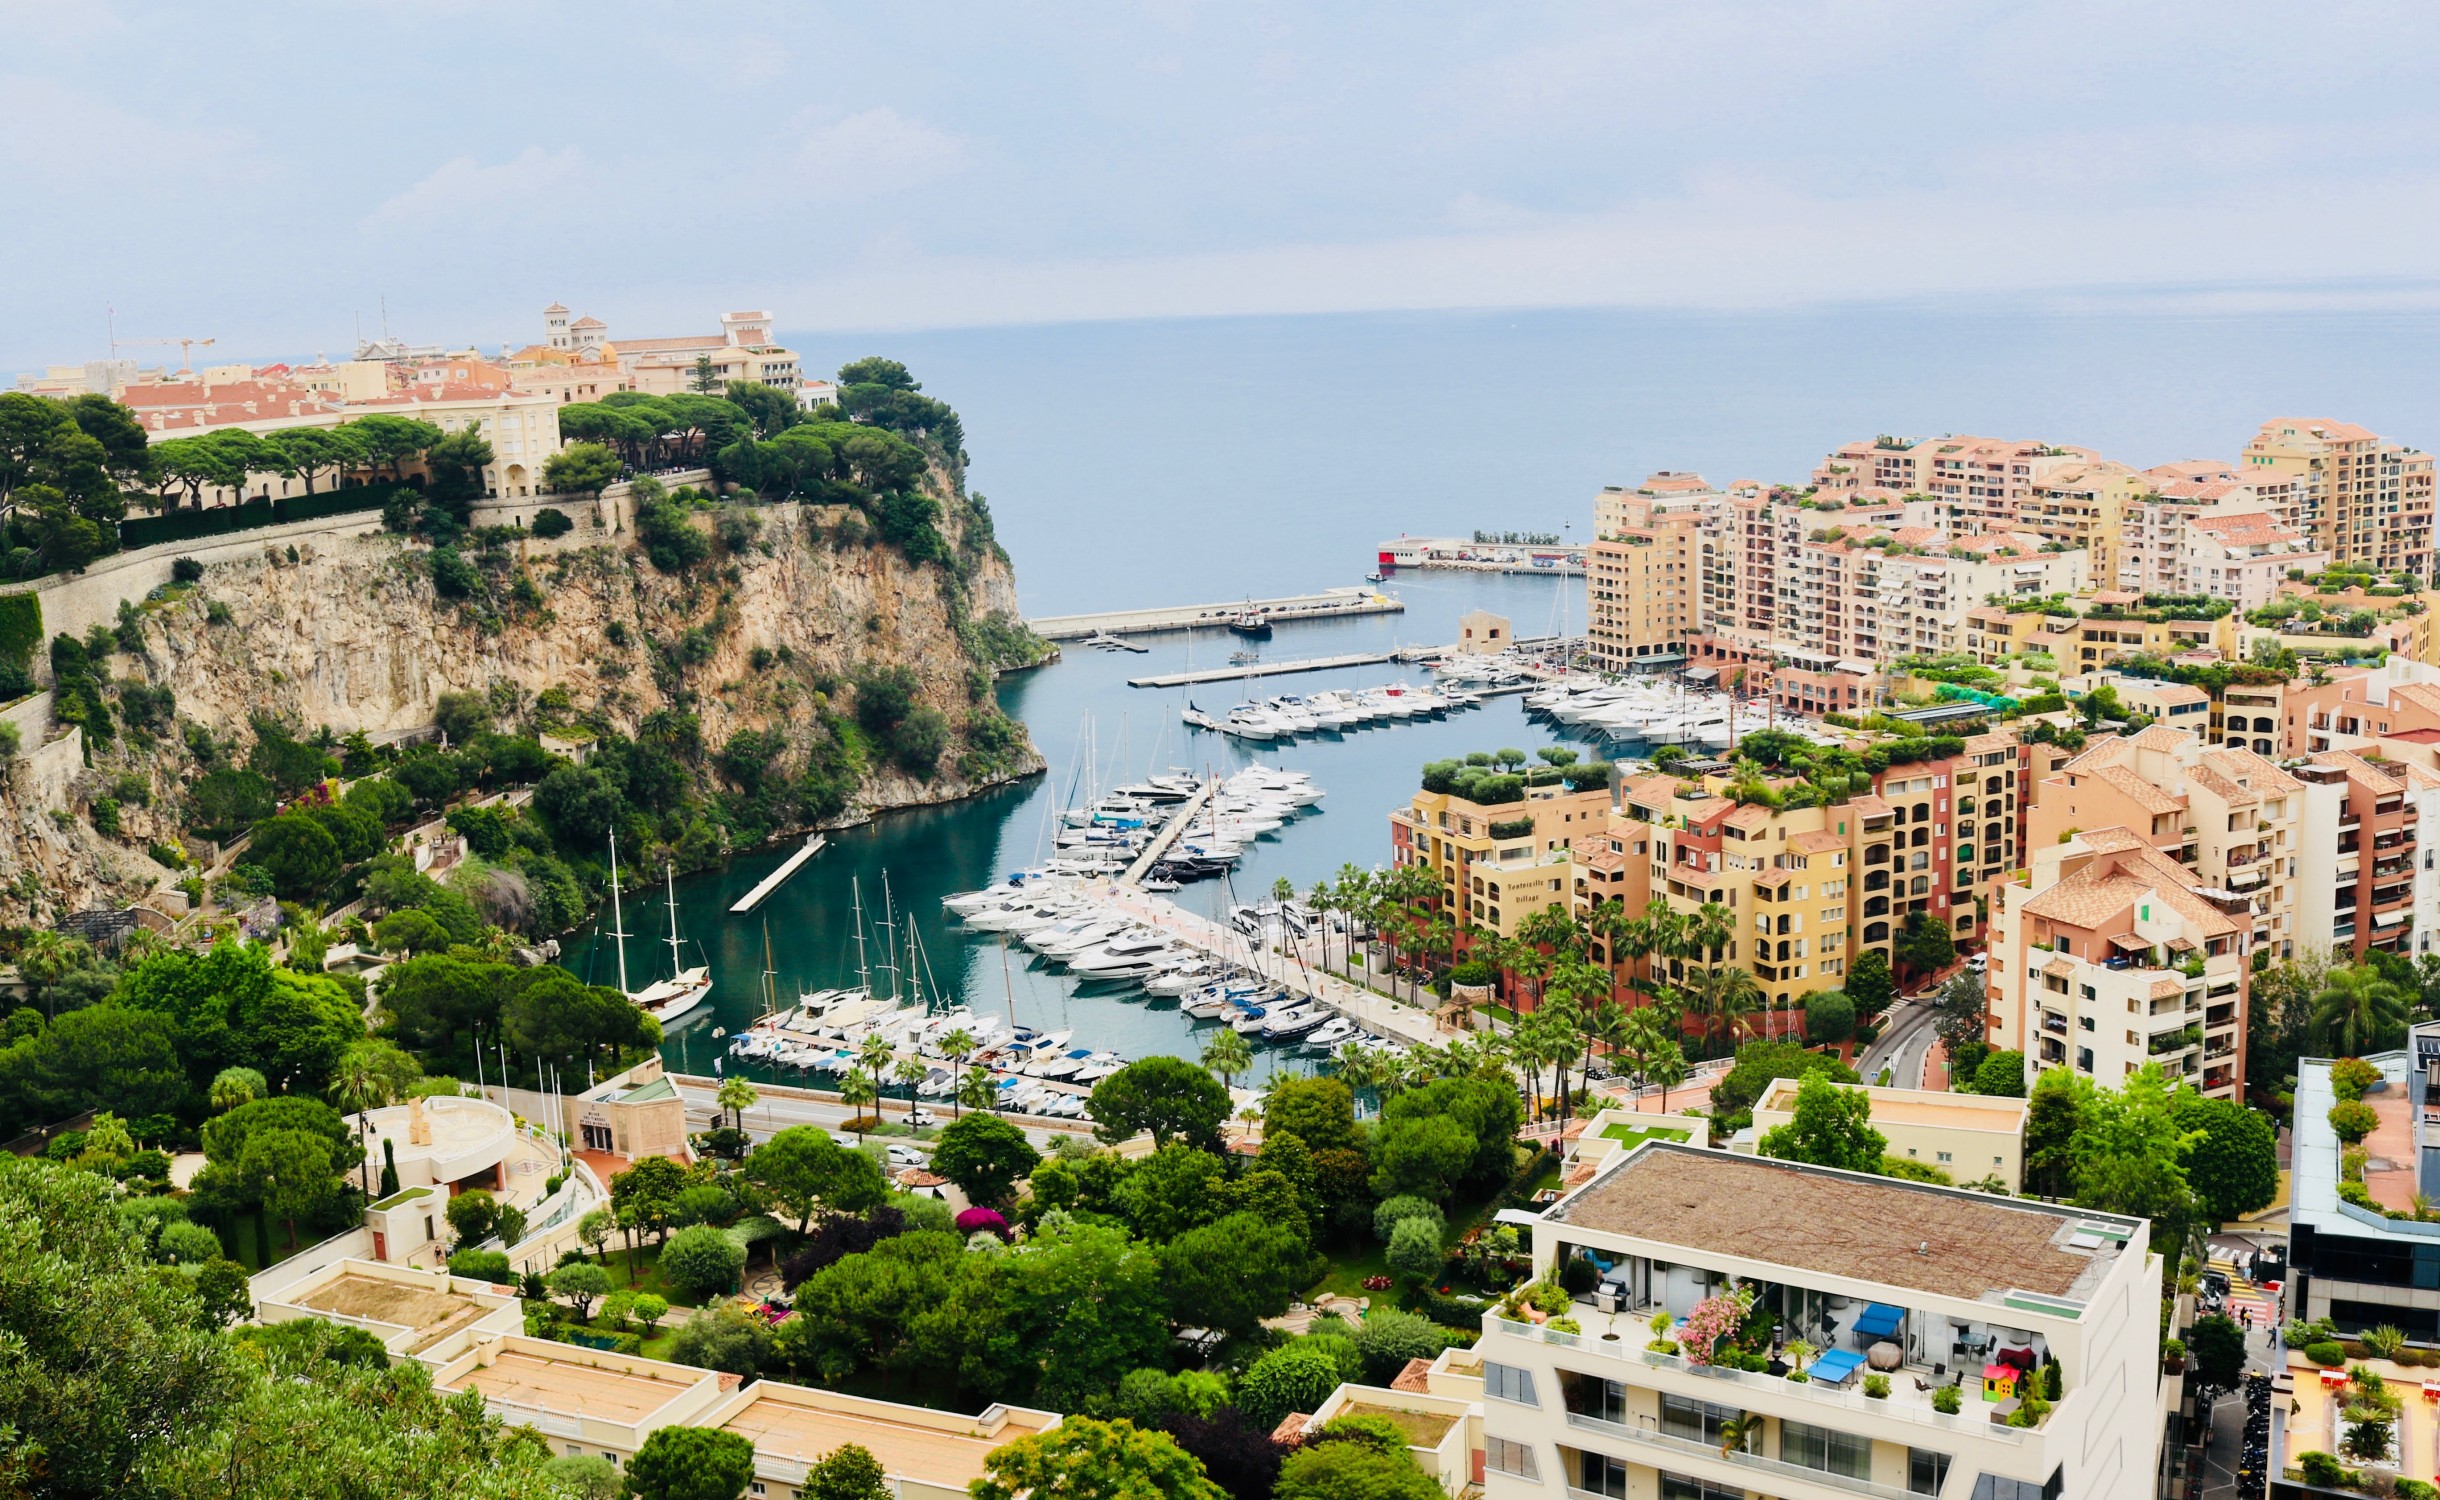 Top 5: best hotels in Monaco to feel like royalty